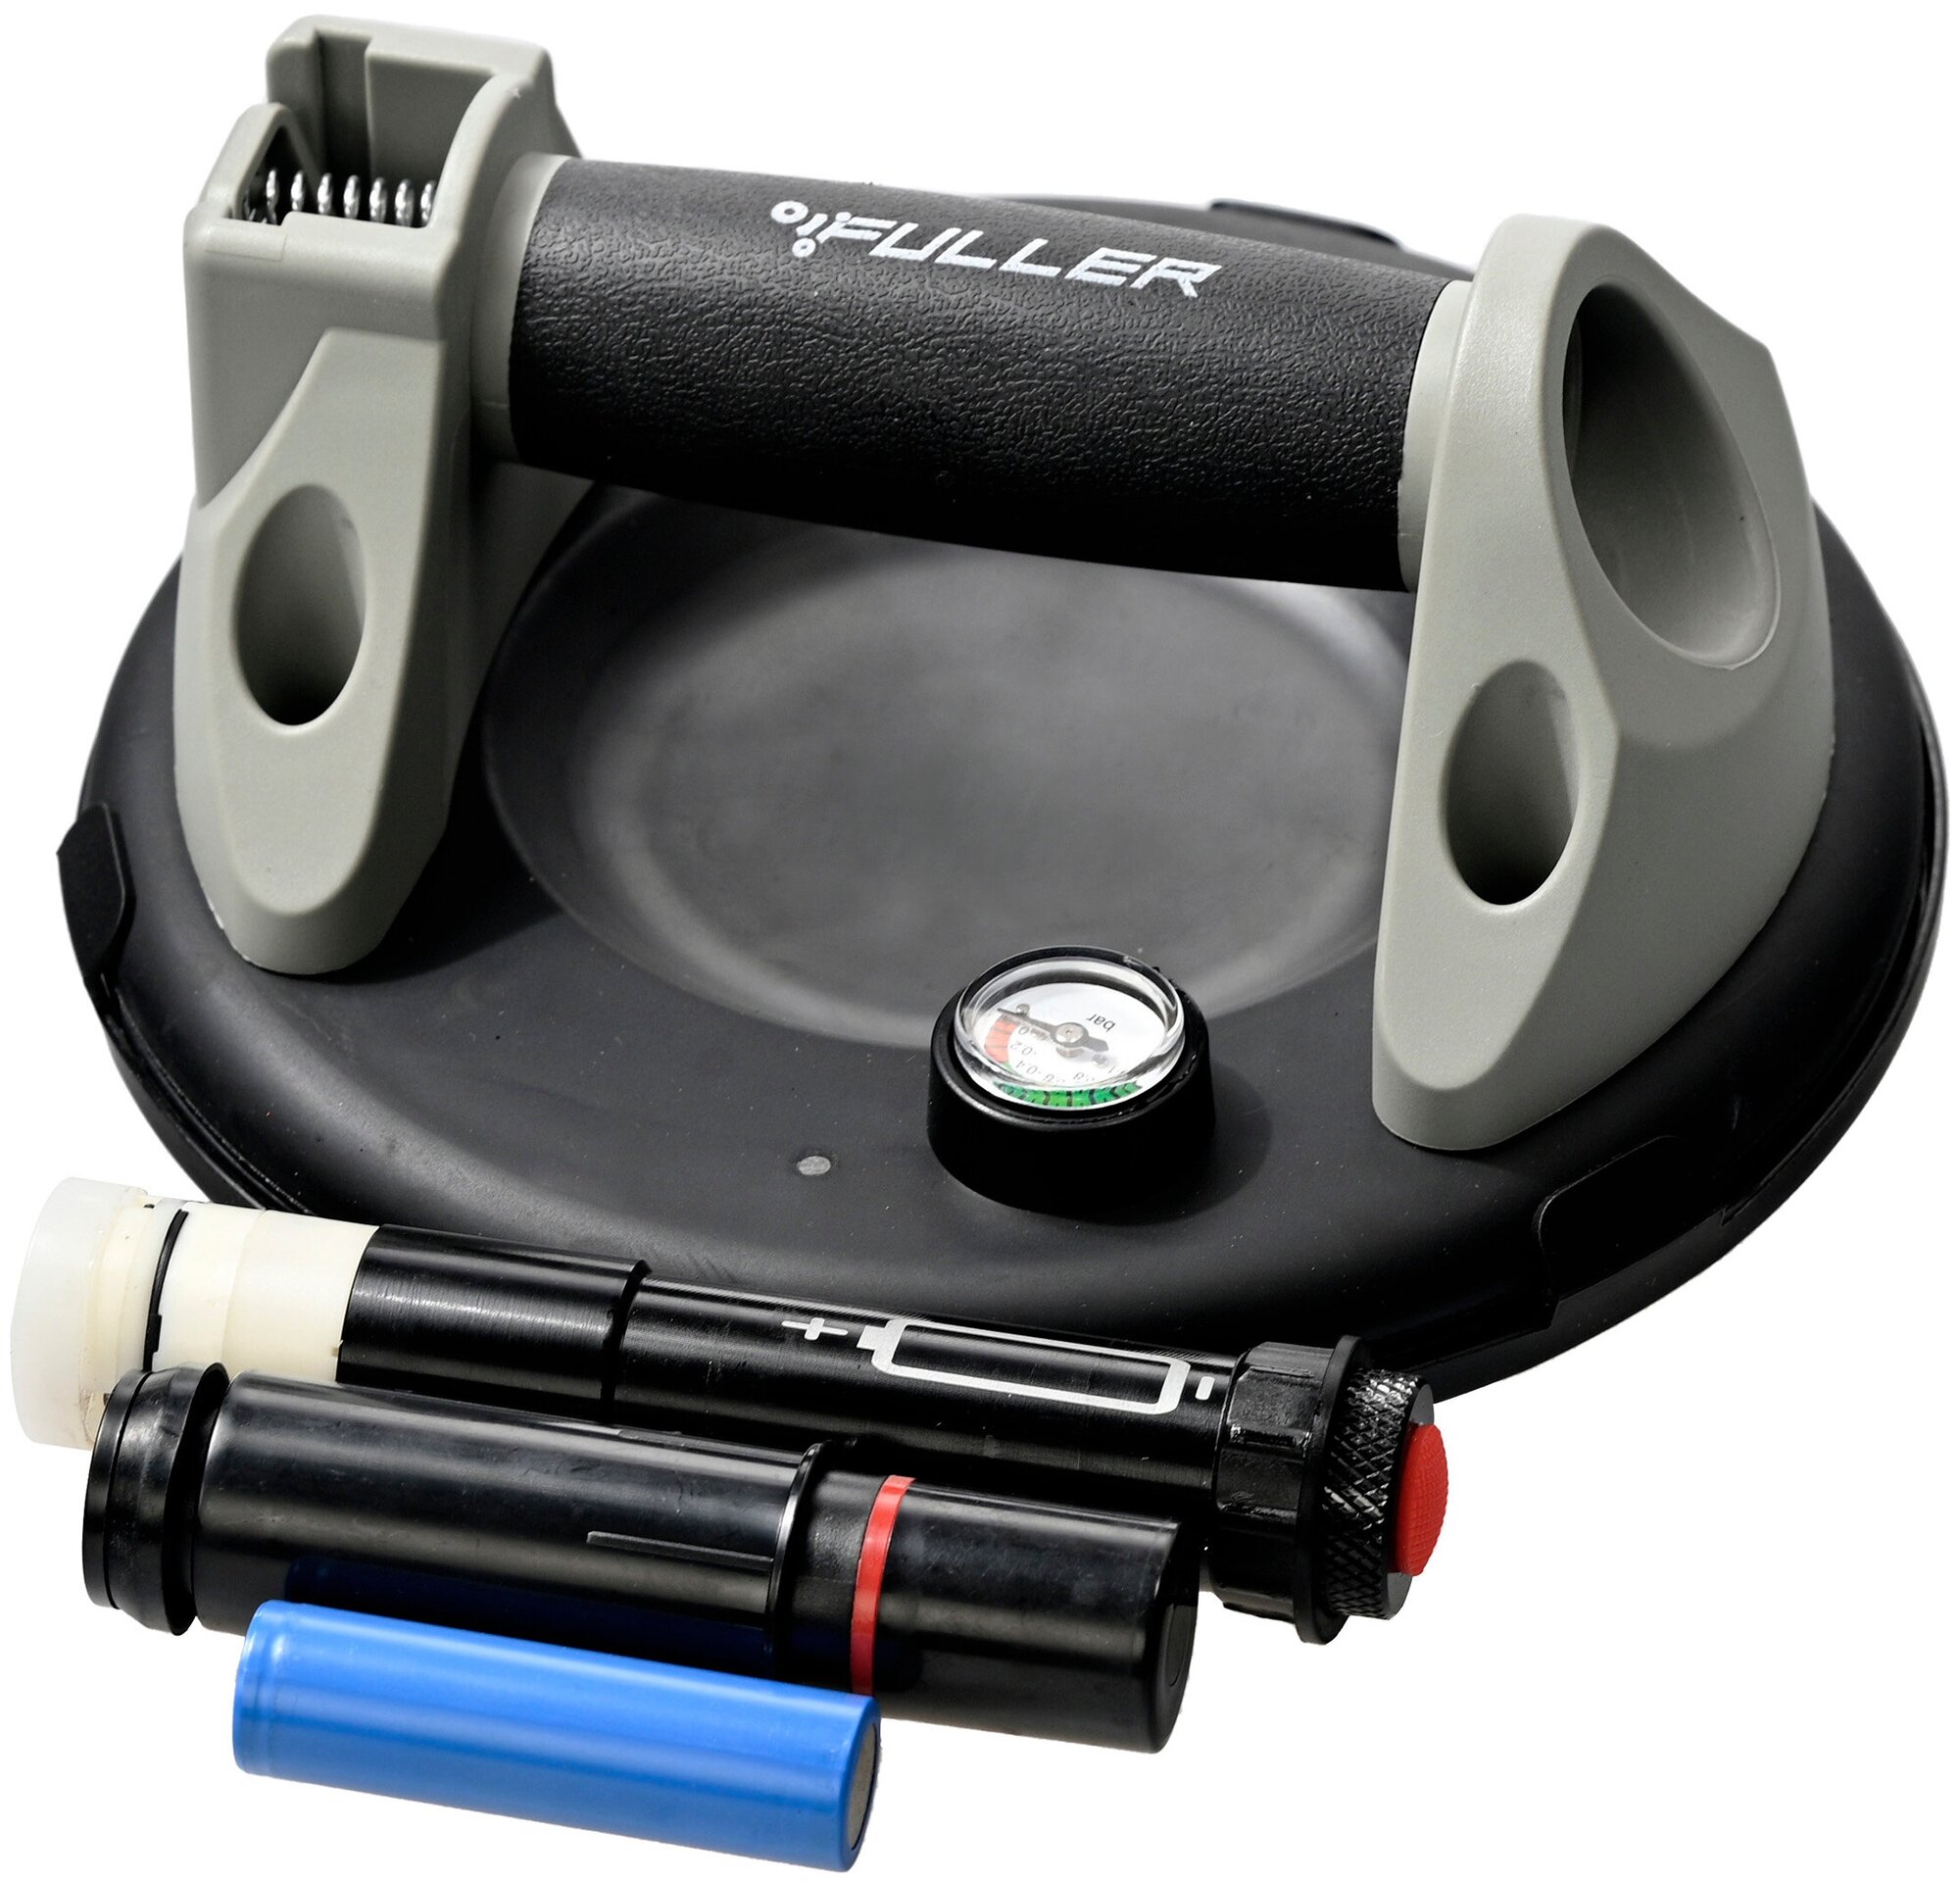 Вакуумная присоска аккумуляторная FULLER V400PRO для укладки плитки и переноски 200 мм 250кг